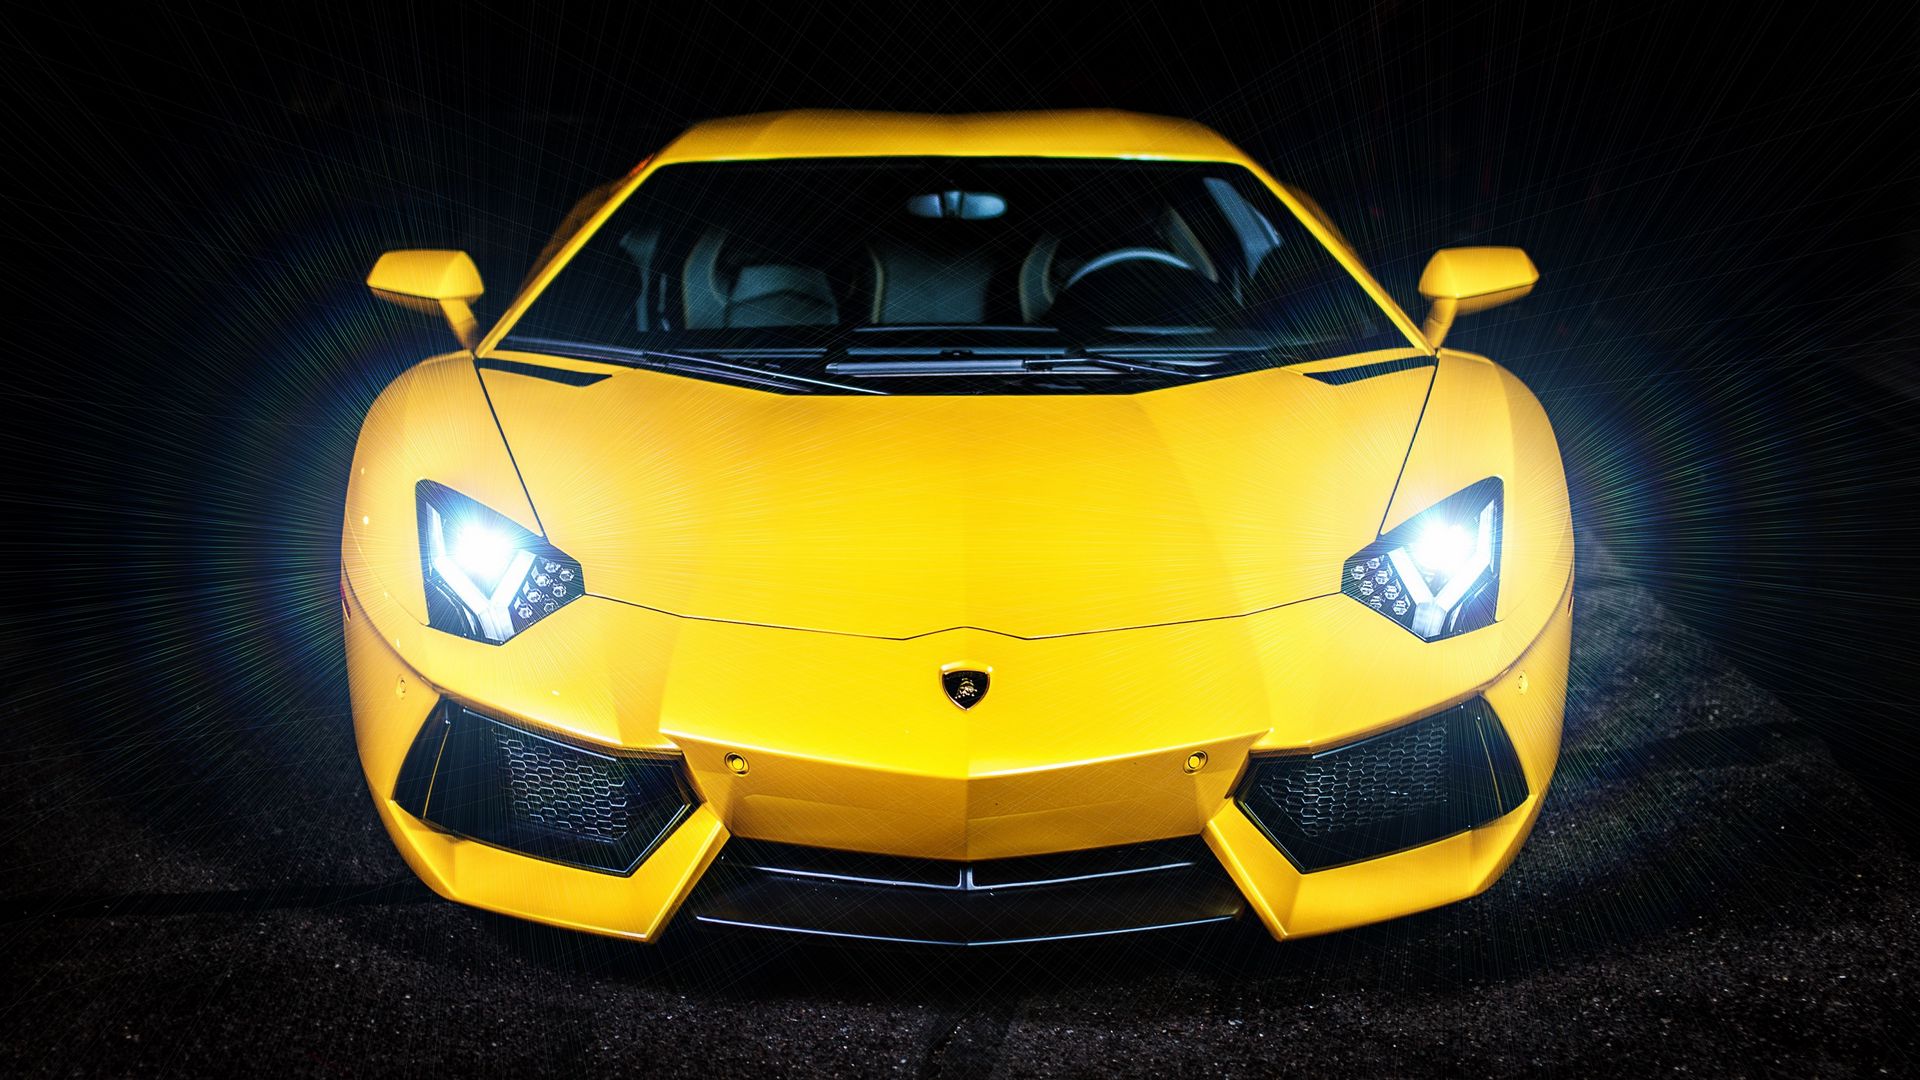 100+] Gold Lamborghini Wallpapers | Wallpapers.com